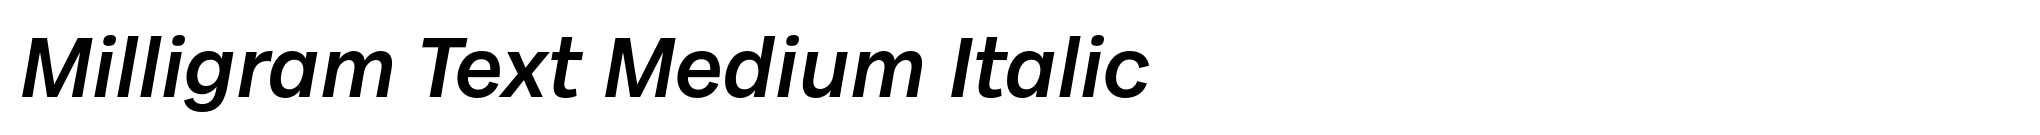 Milligram Text Medium Italic image